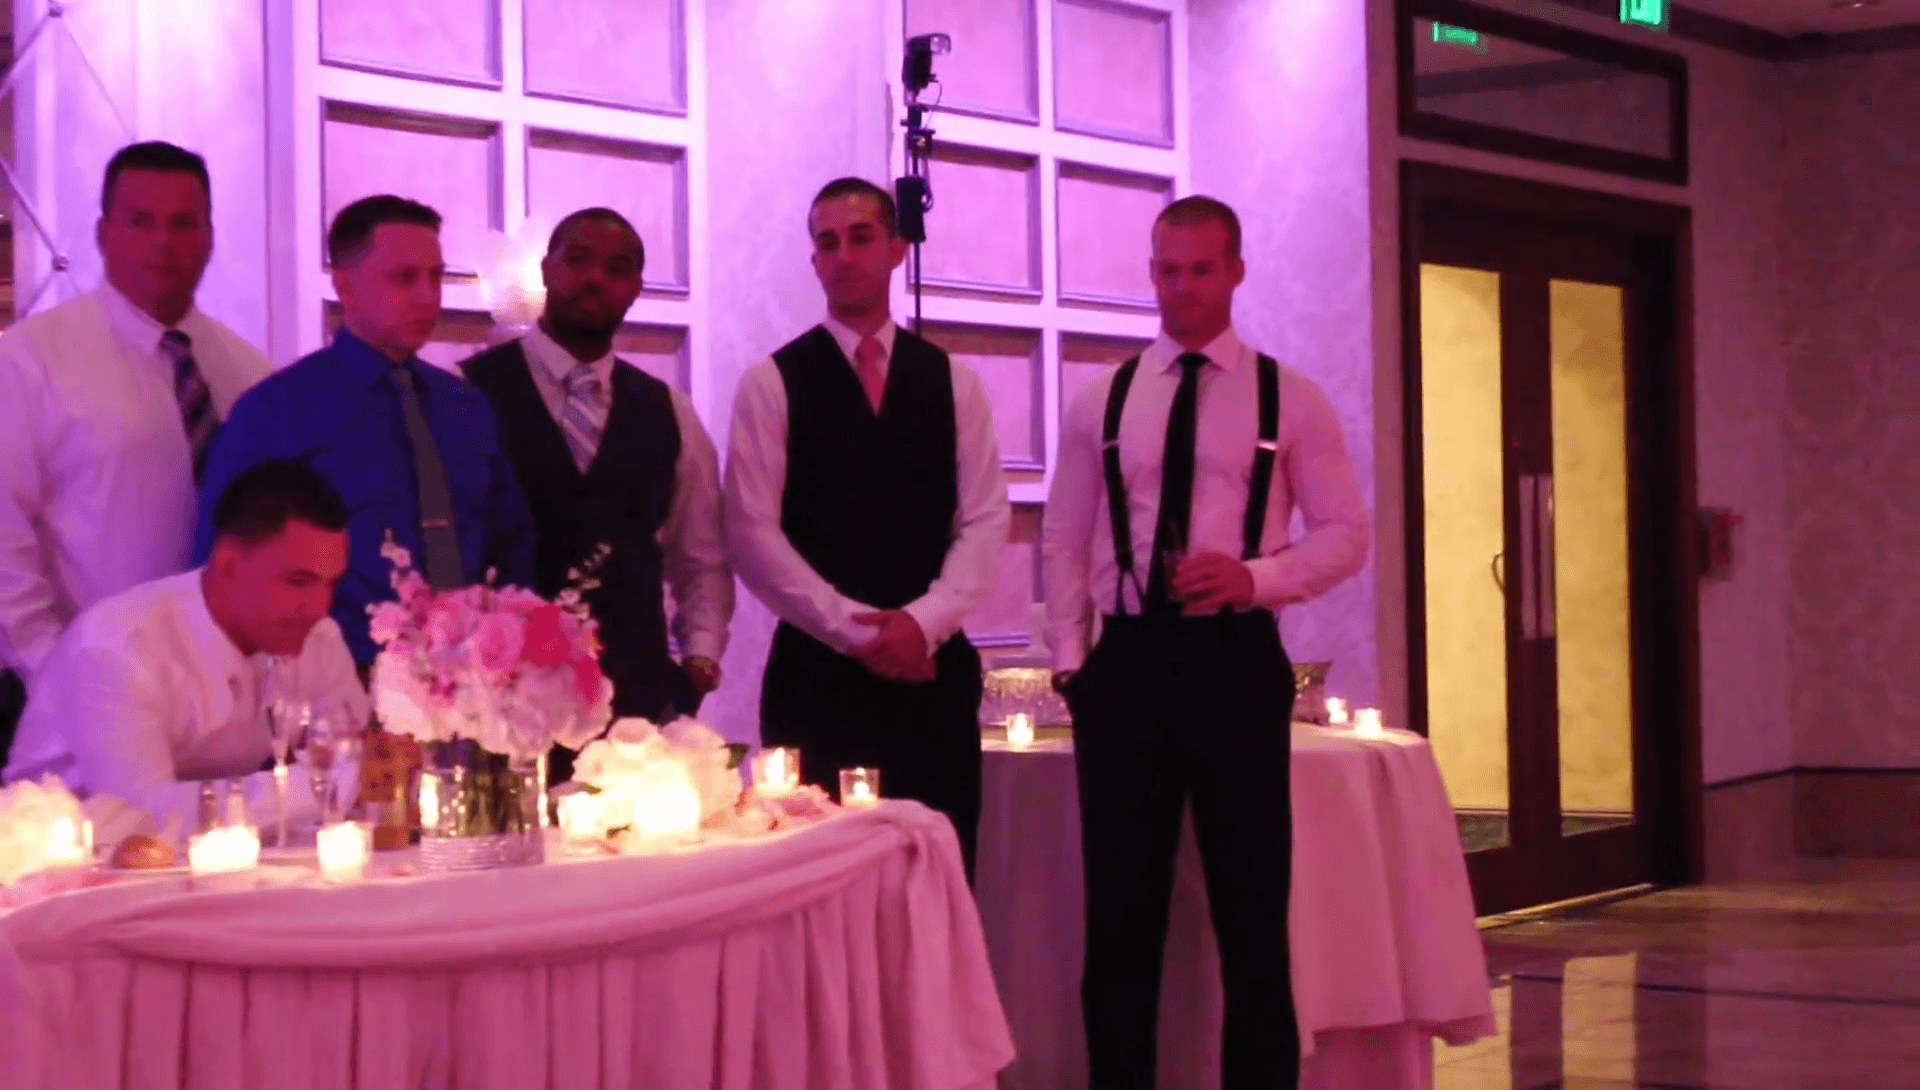 http://158.69.55.95/wp-content/uploads/2018/09/06-gentlemen-standing-around-groom-1.png